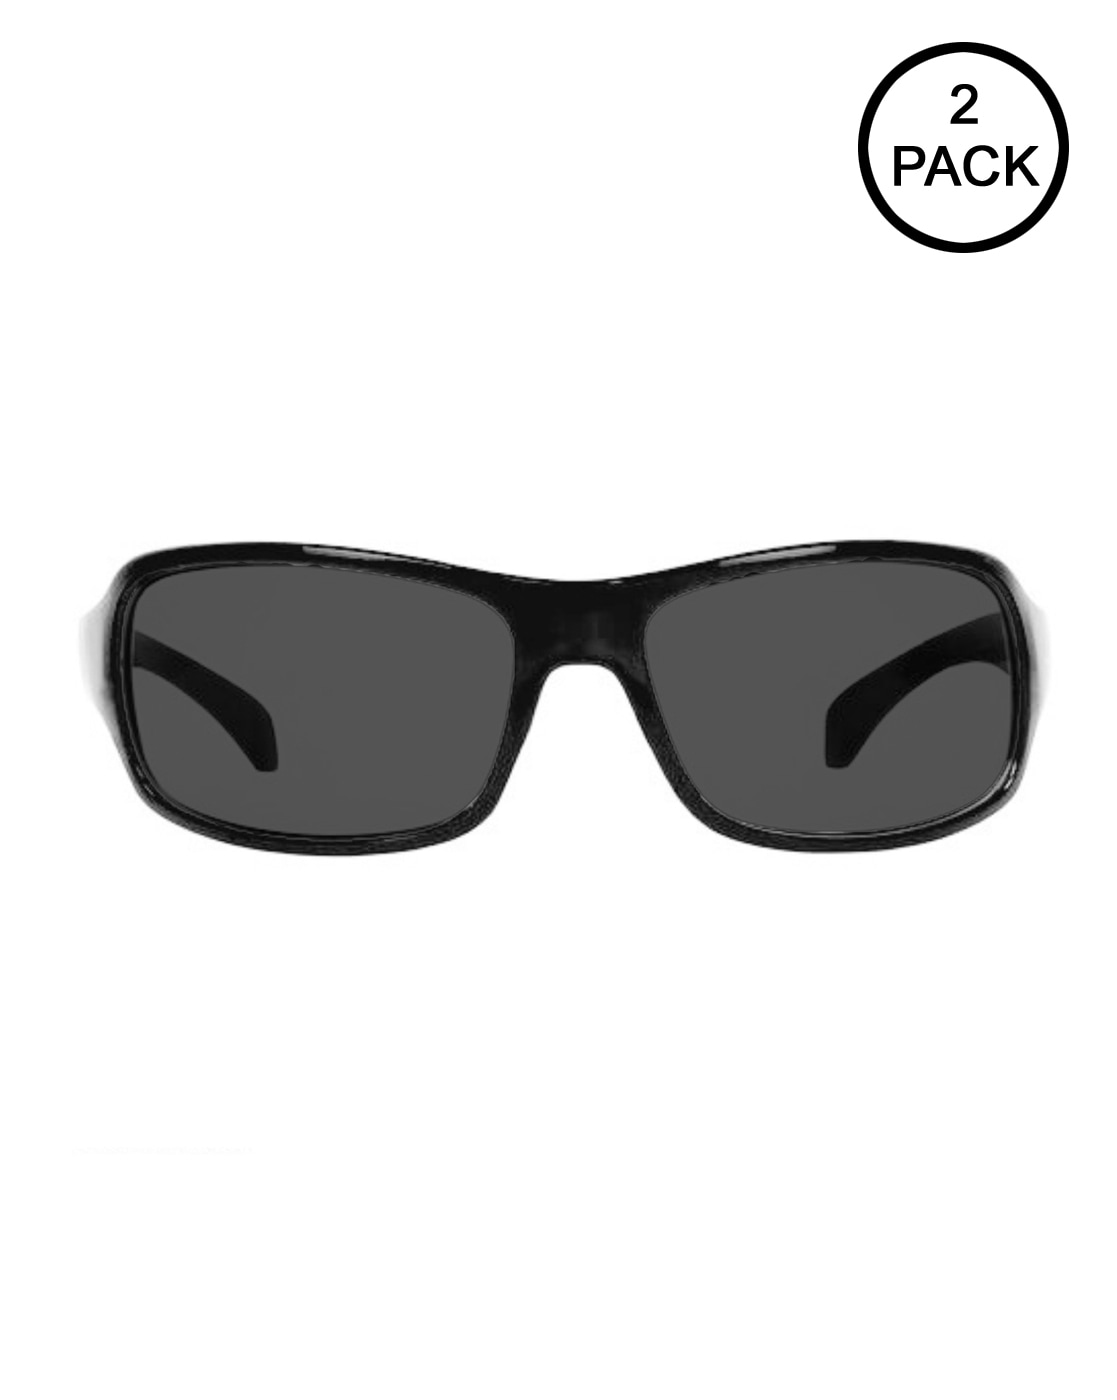 Buy Eymen I Aviator, Clubmaster Sunglasses Black For Men & Women Online @  Best Prices in India | Flipkart.com